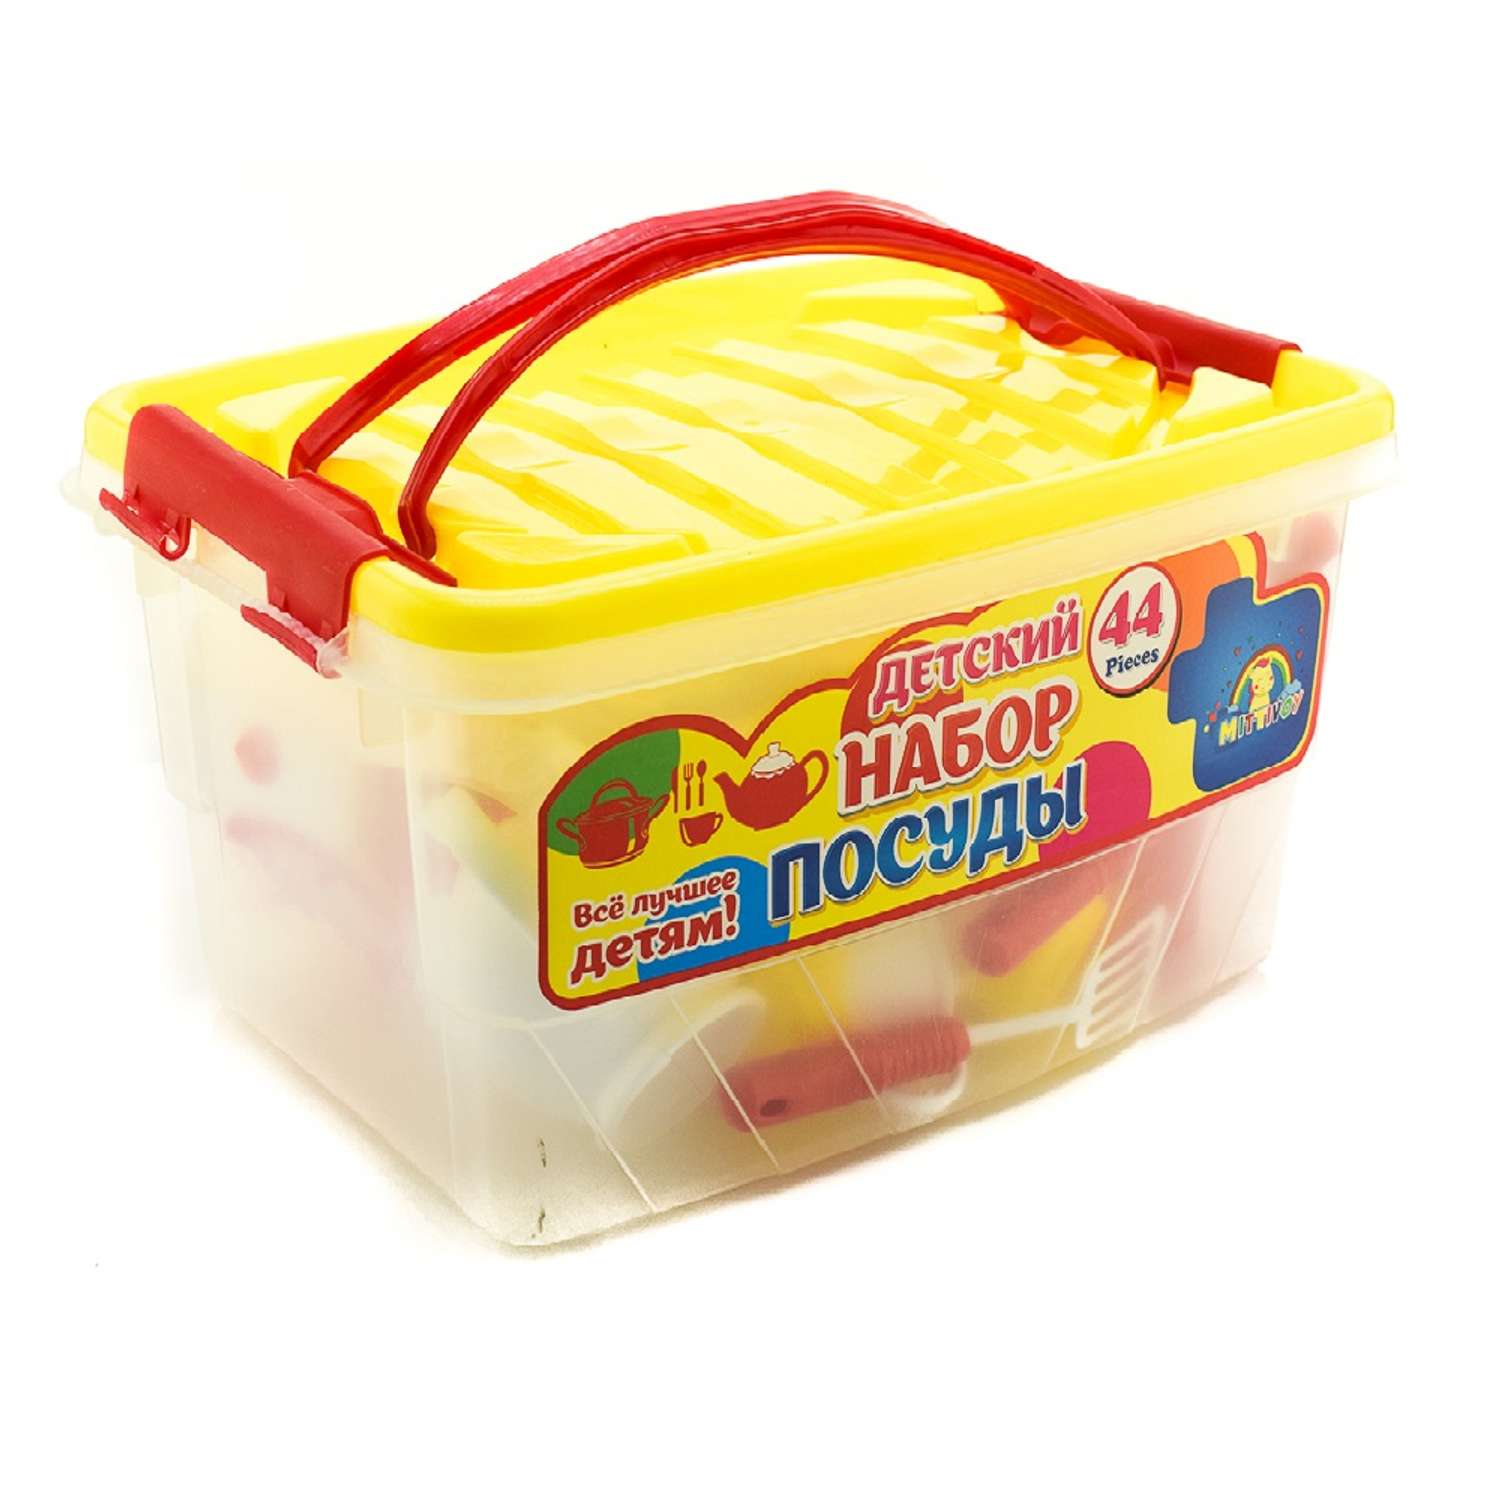 Набор игрушечной посуды TOY MIX Детский развивающий в пластиковом контейнере KMP 200 - фото 6